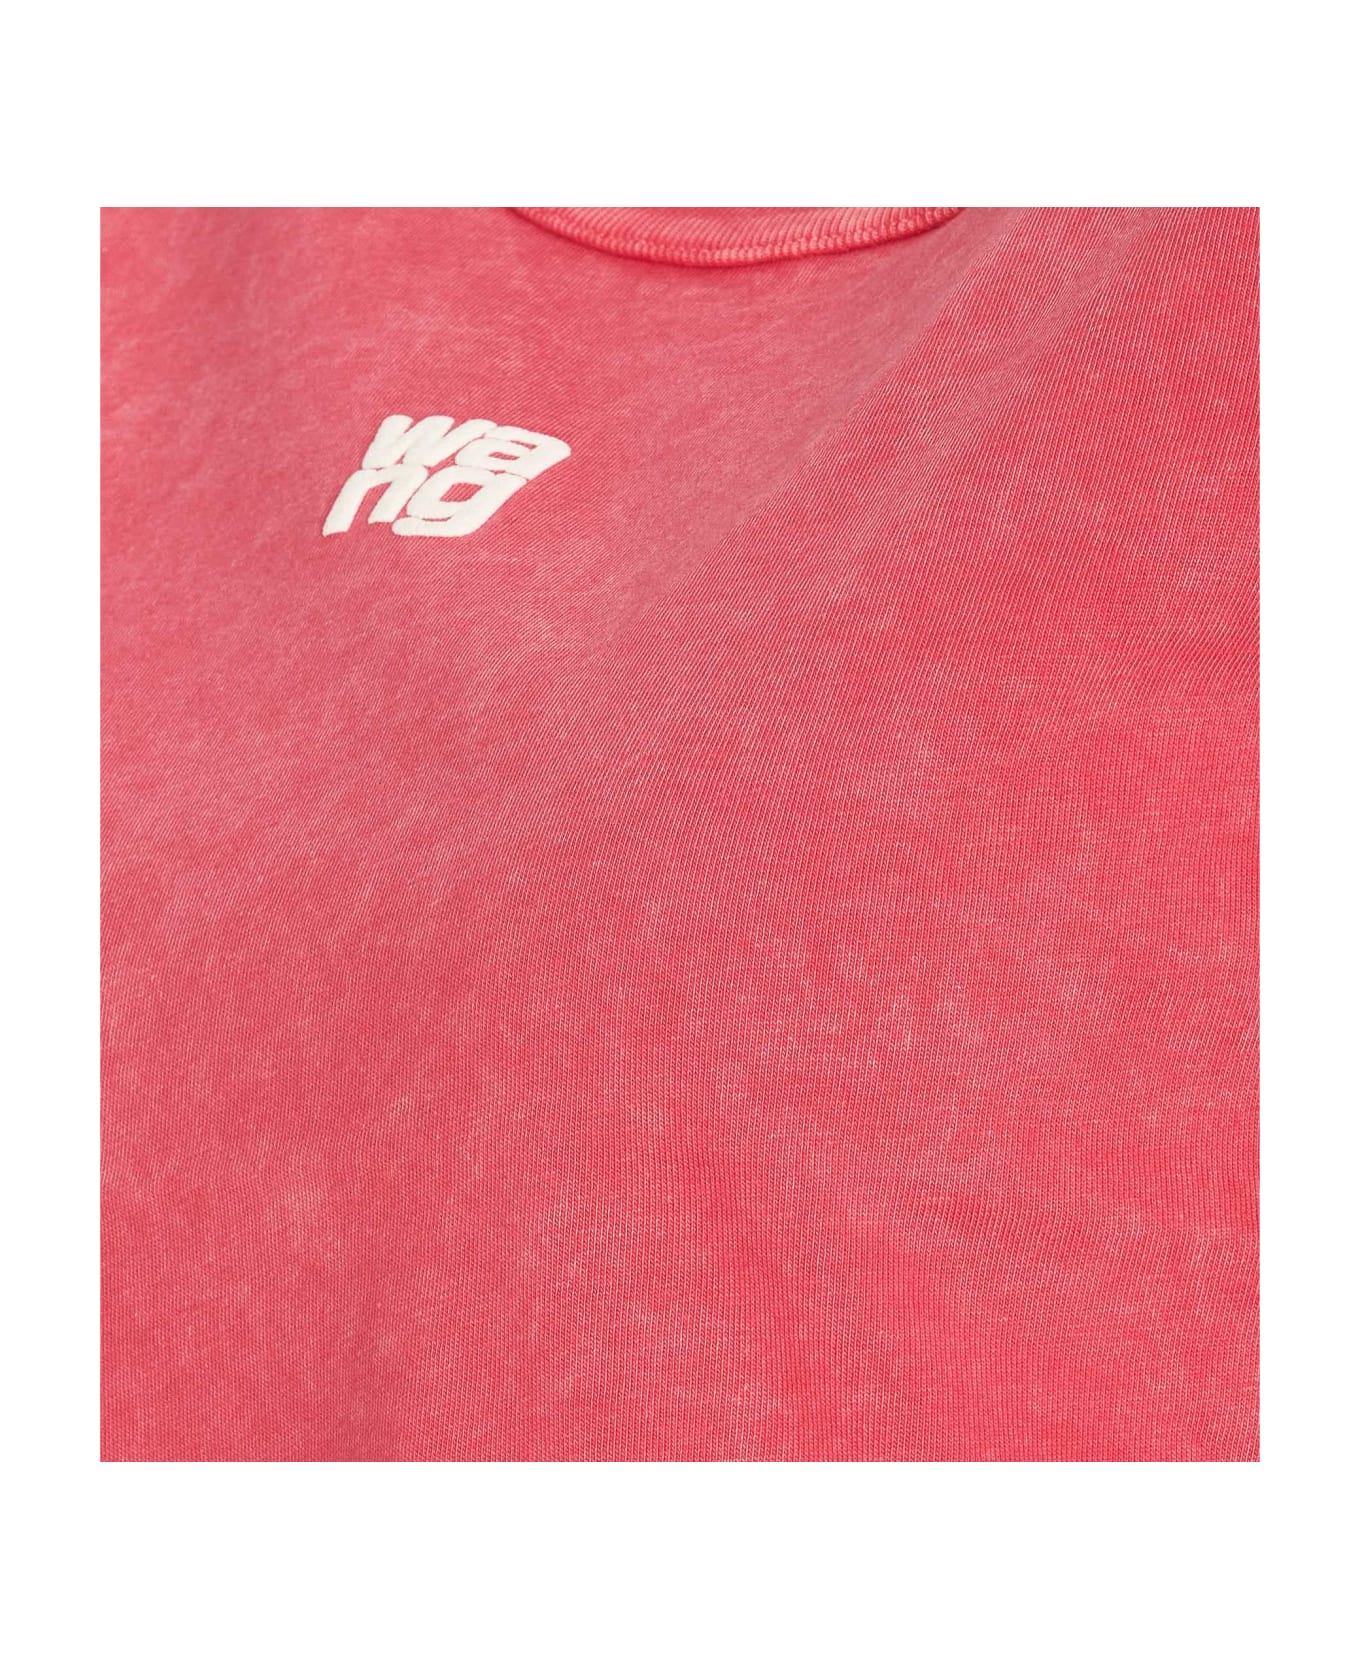 Alexander Wang Logo T-shirt - Pink Tシャツ